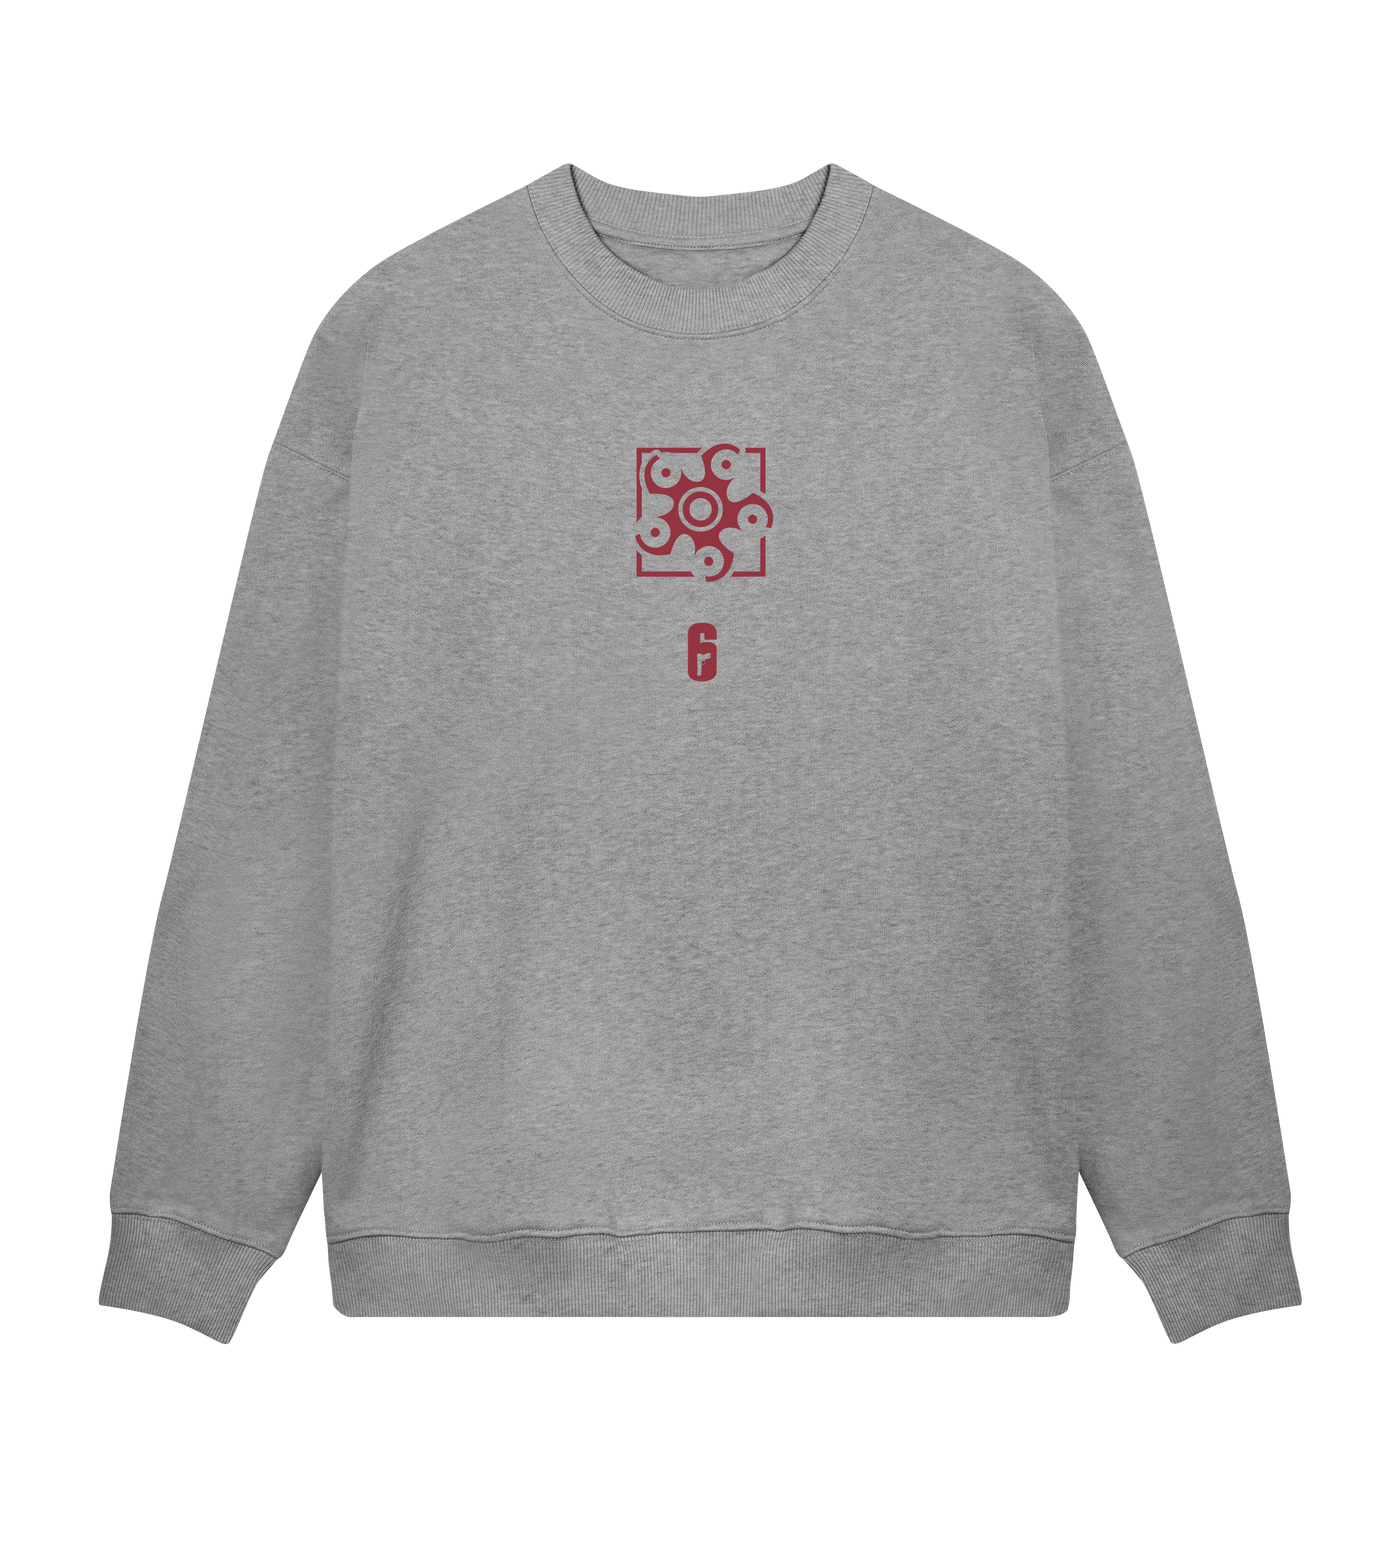 6 SIEGE - Hibana Grey Sweatshirt